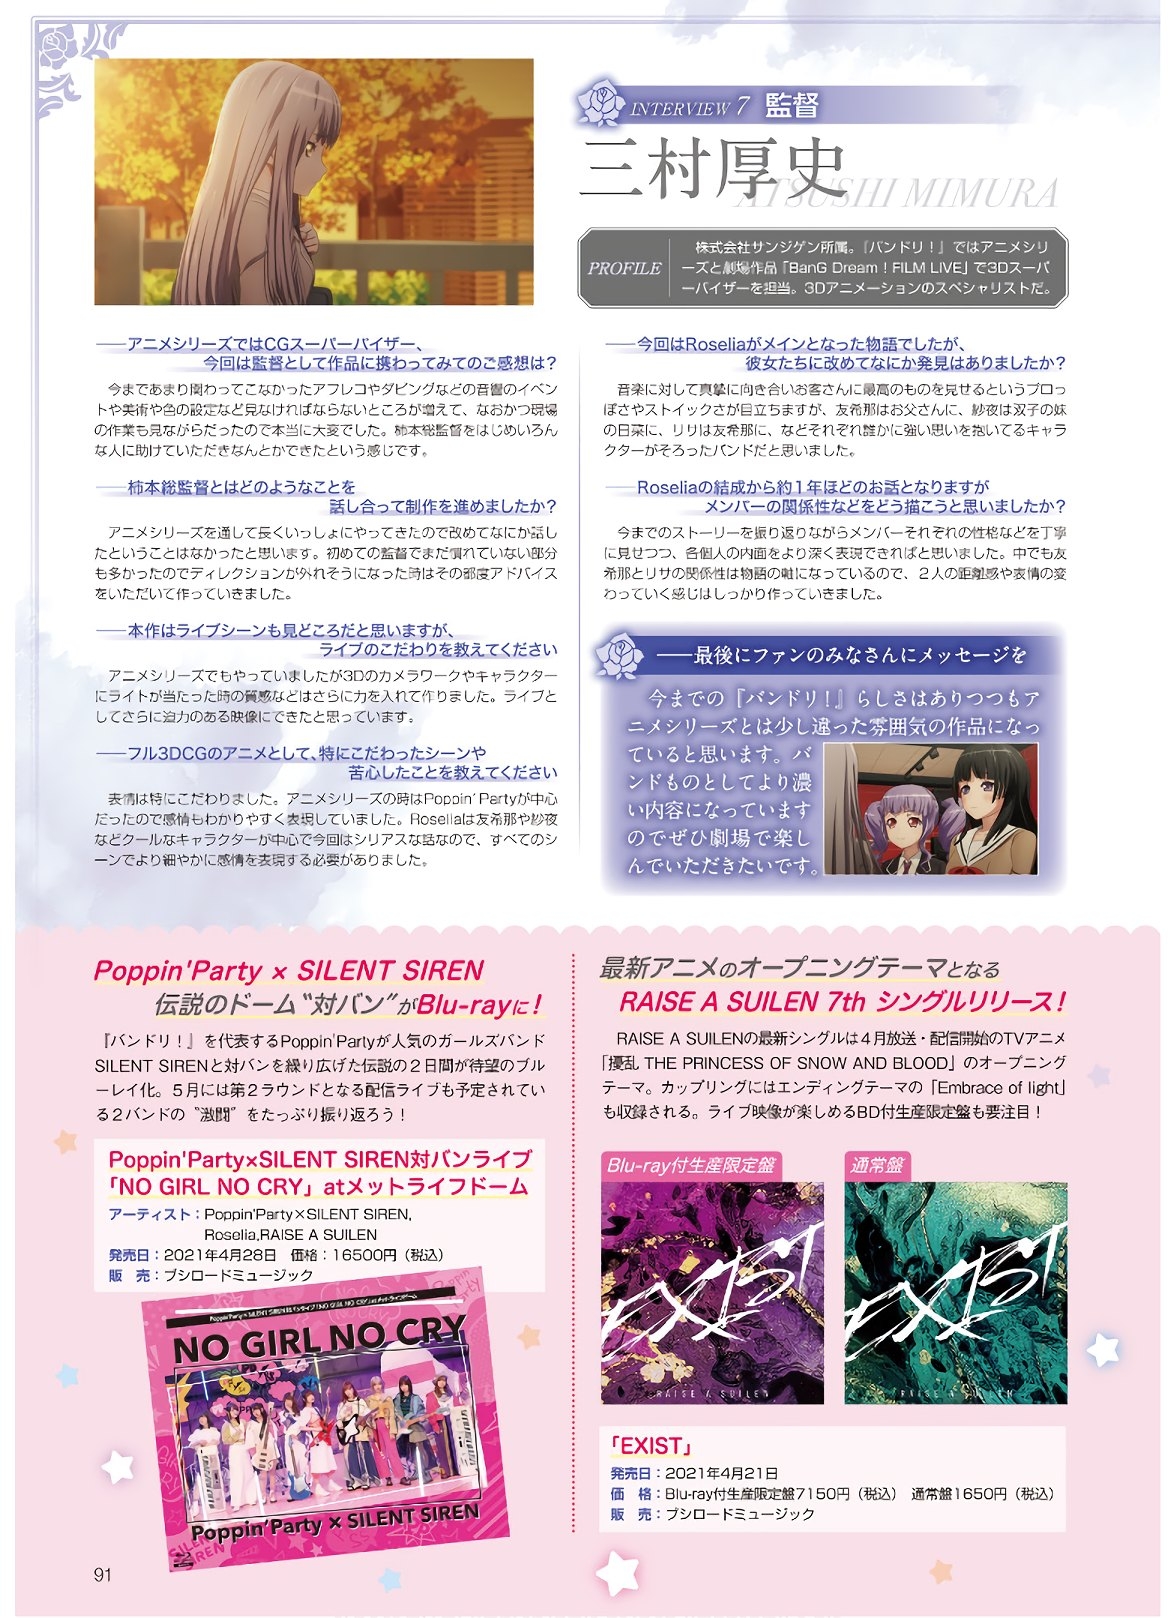 Dengeki G's Magazine #286 - May 2021 88